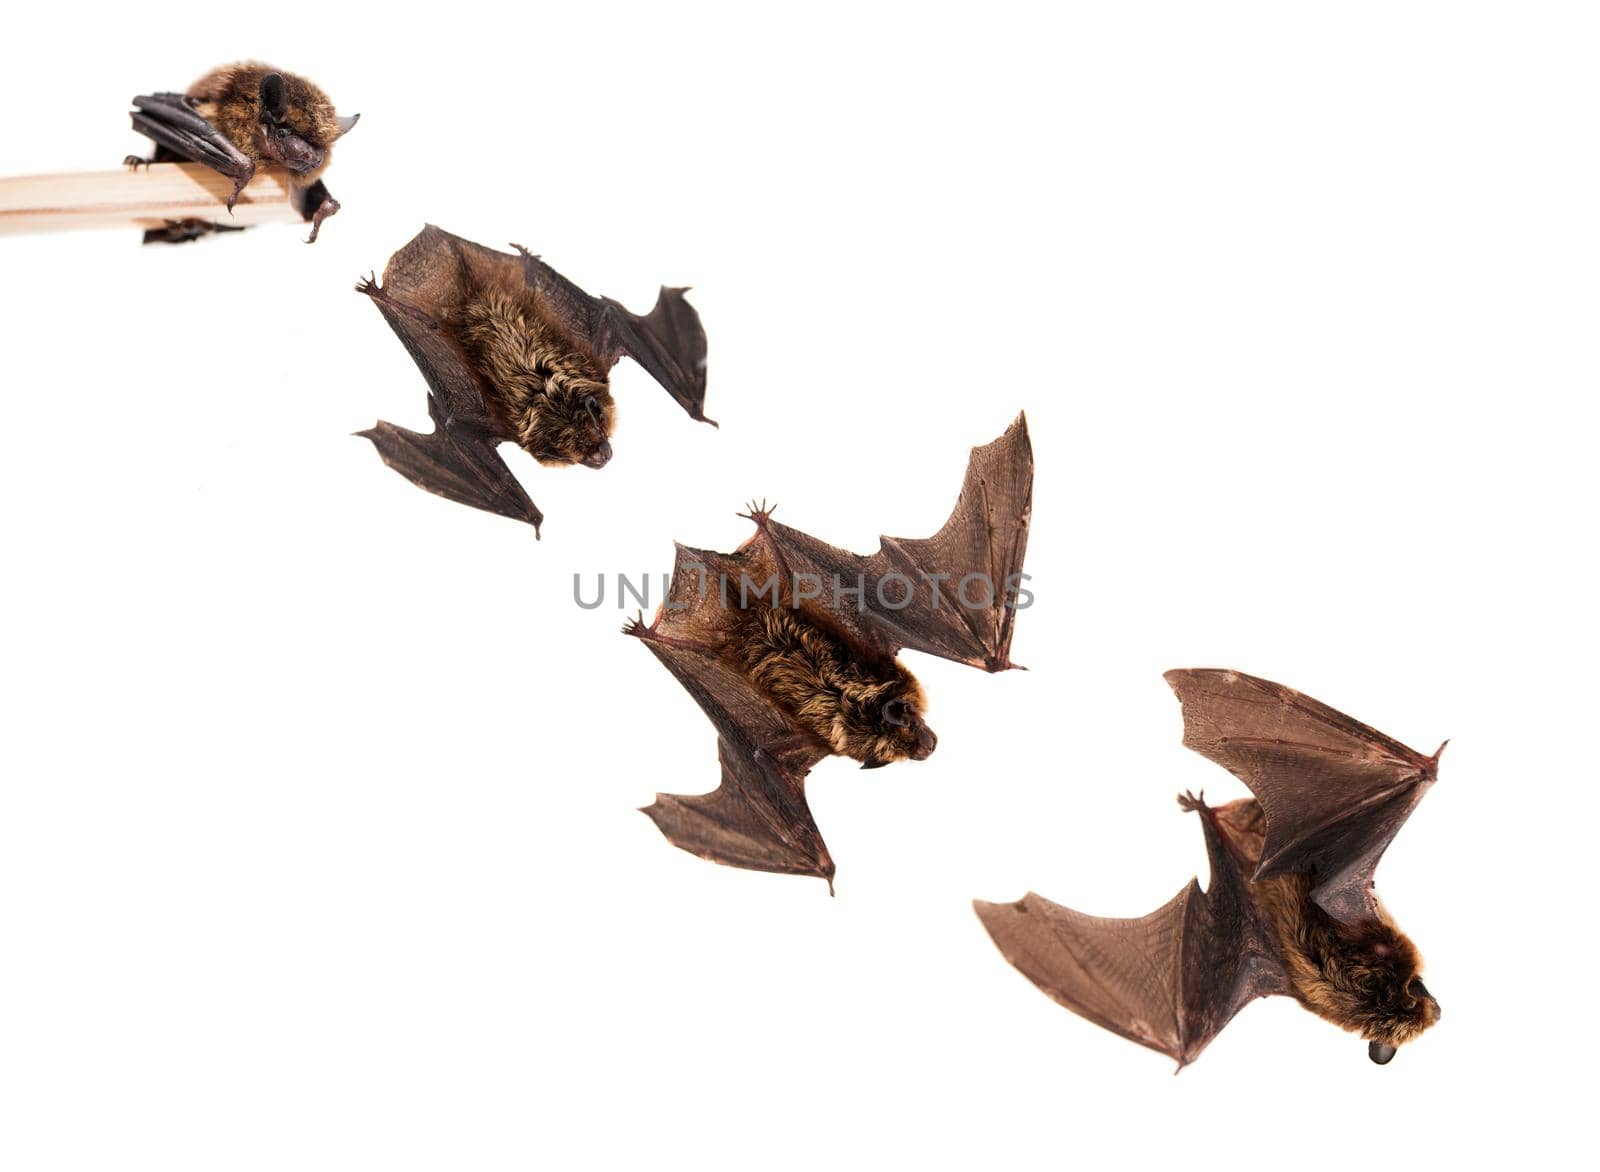 Set of Flying Northern bat, Eptesicus nilssonii, isolated on white.